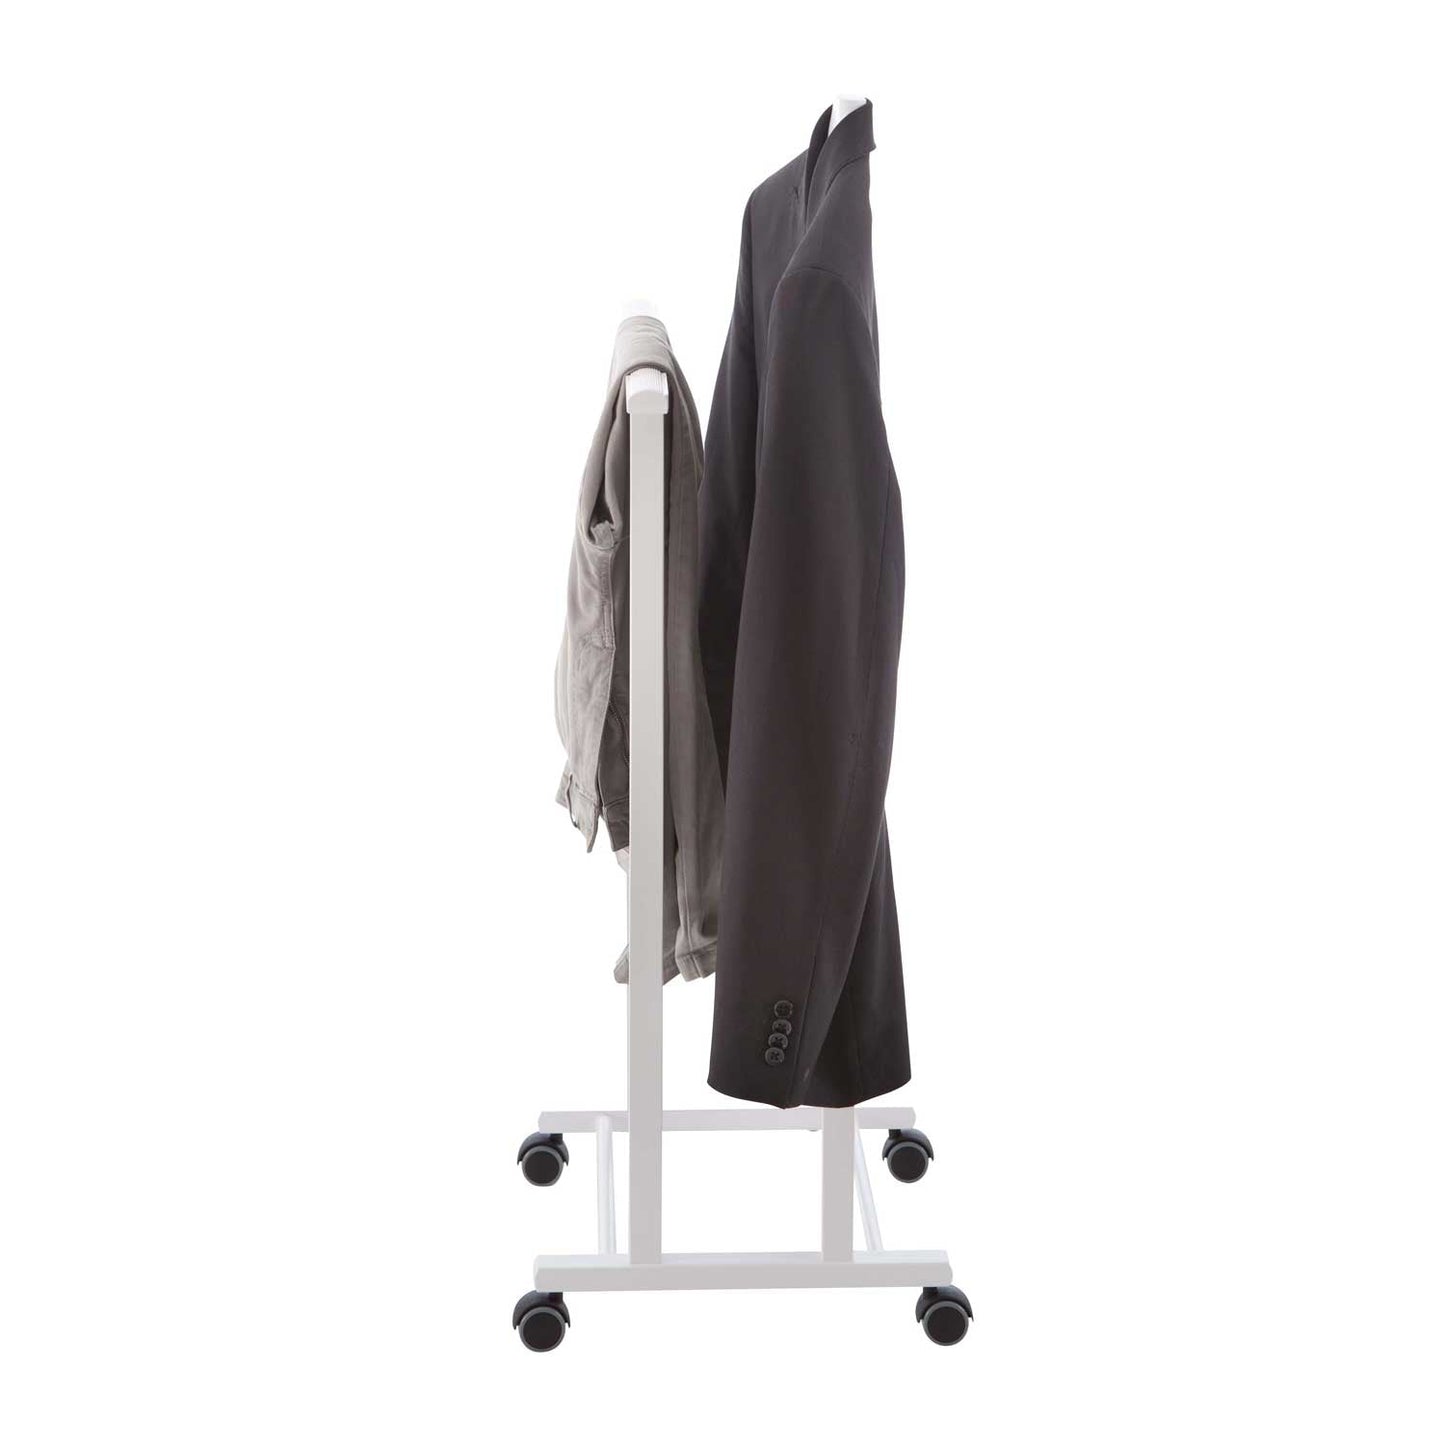 Valet de nuit ATRI, Composé d'un cintre et d'un porte-pantalon, pieds en caoutchouc à la base. - couleur blanche, 1